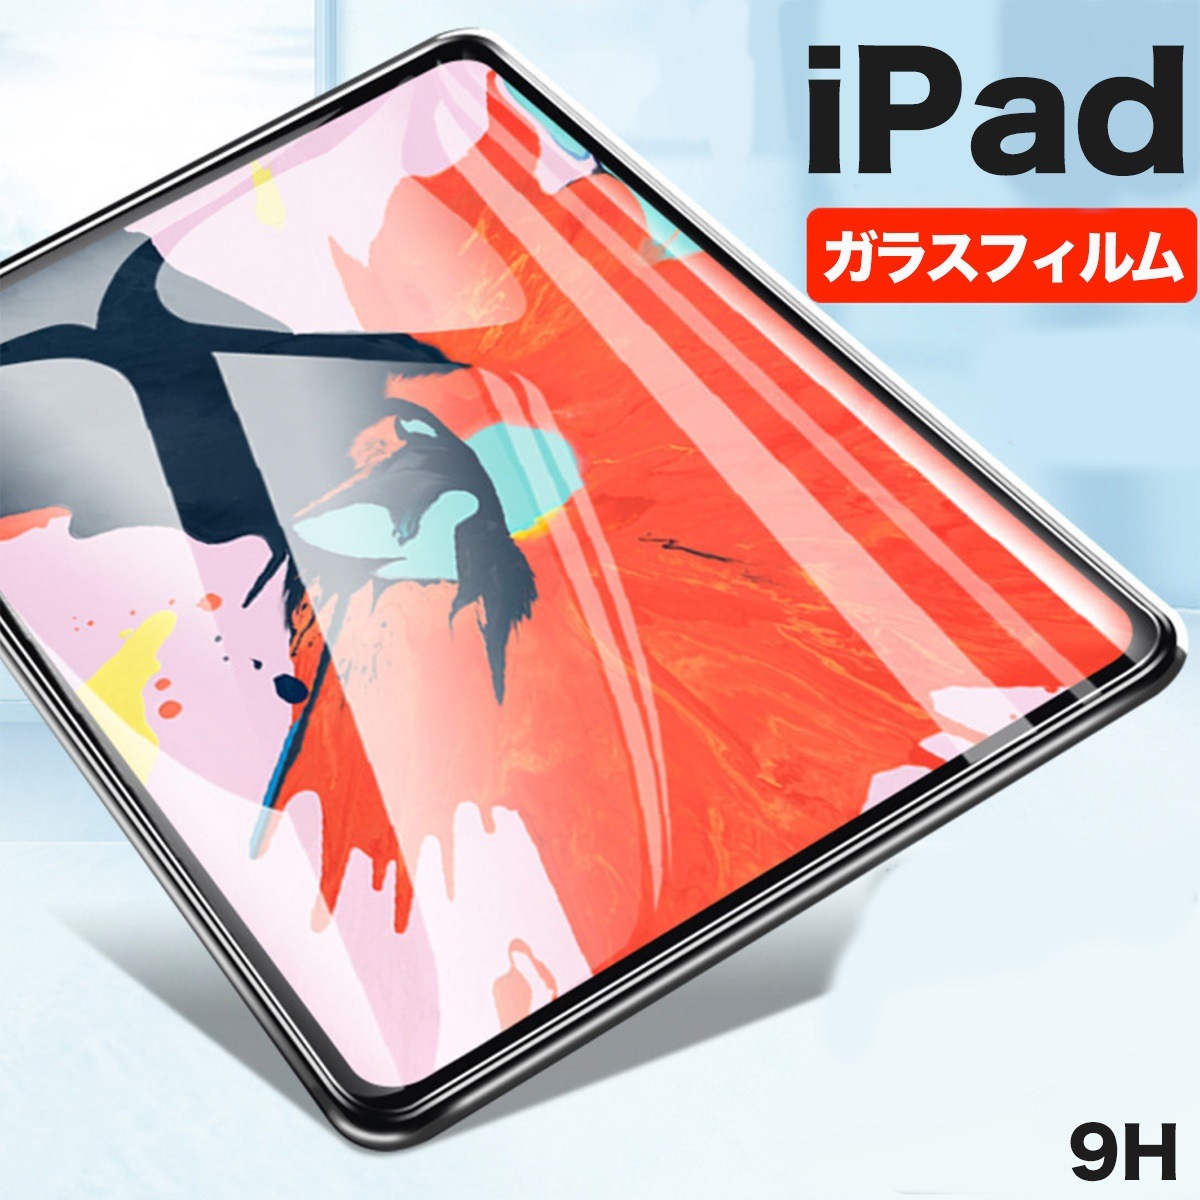 大特価放出 選べる ipad 強化ガラスフィルム 送料無料 iPad Air 2019 mini Pro 11 2017 クリアガラスフィルム 12.9 アウトレットセール 特集 2018 10.5